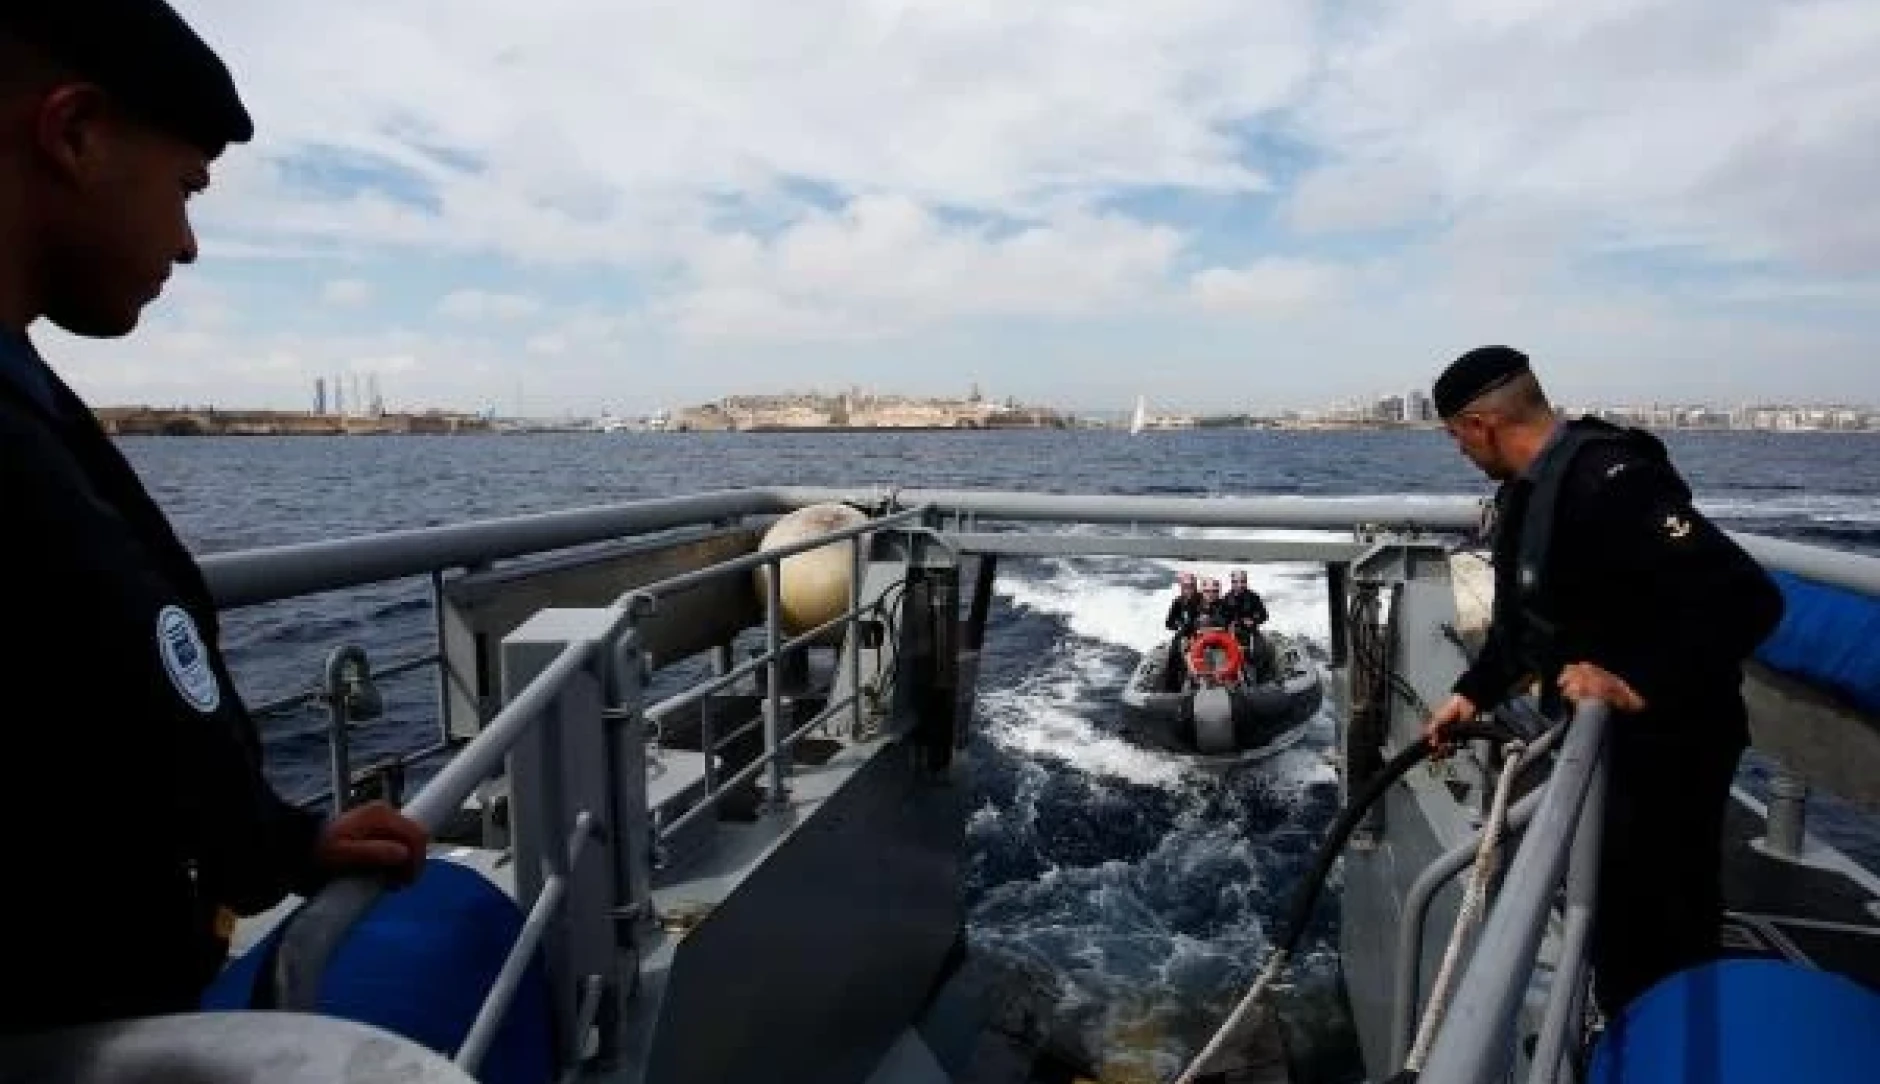 Border guards at sea